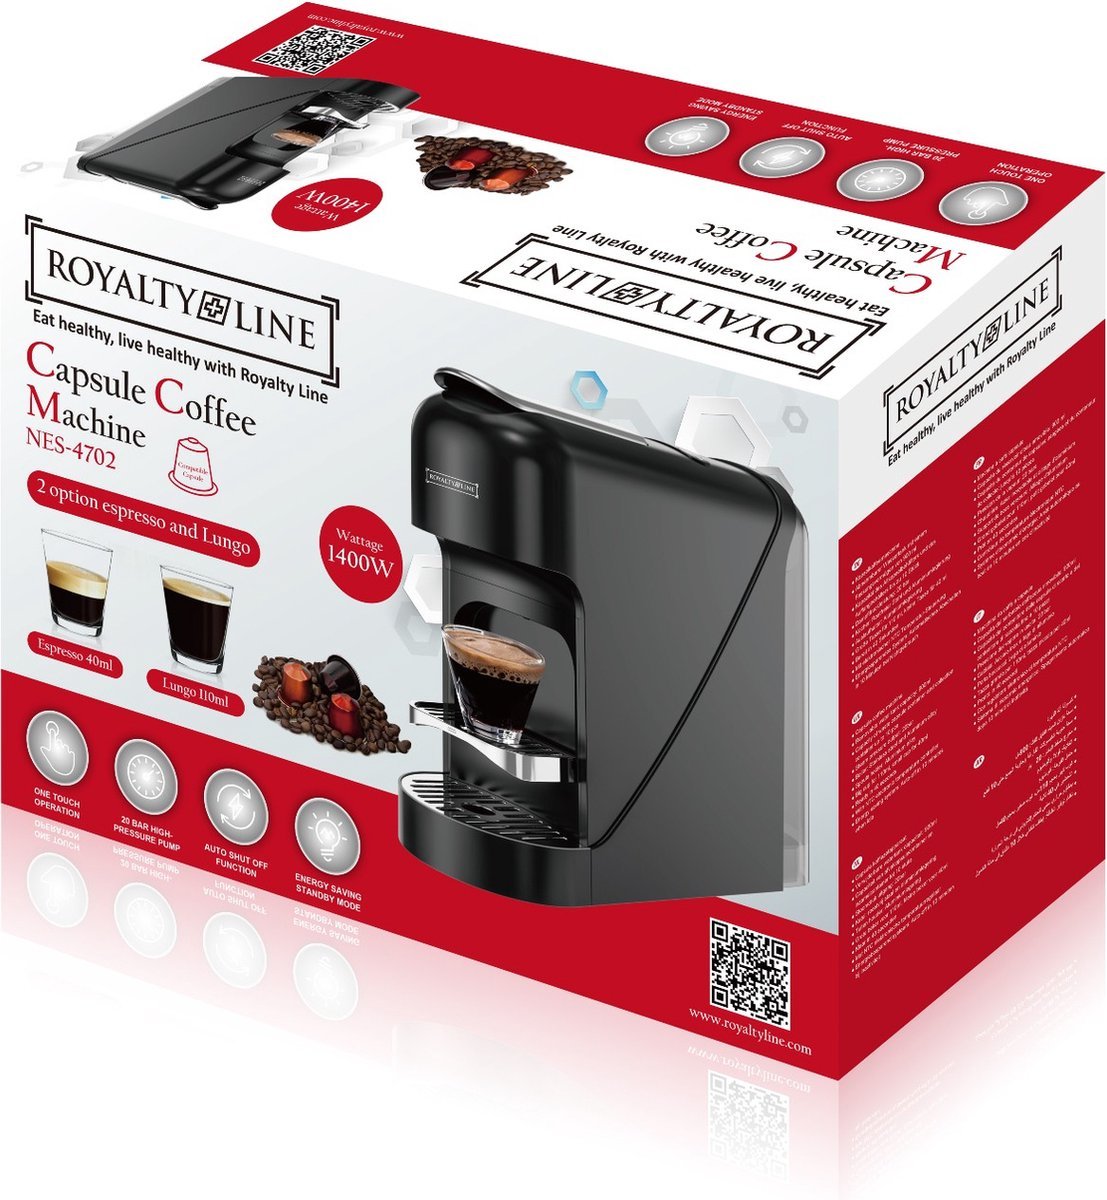 Μηχανή καφέ Royalty Line NES-4702 - ΚΑΦΕΤΙΕΡΕΣRoyalty Line®The GrBazaar of Brands